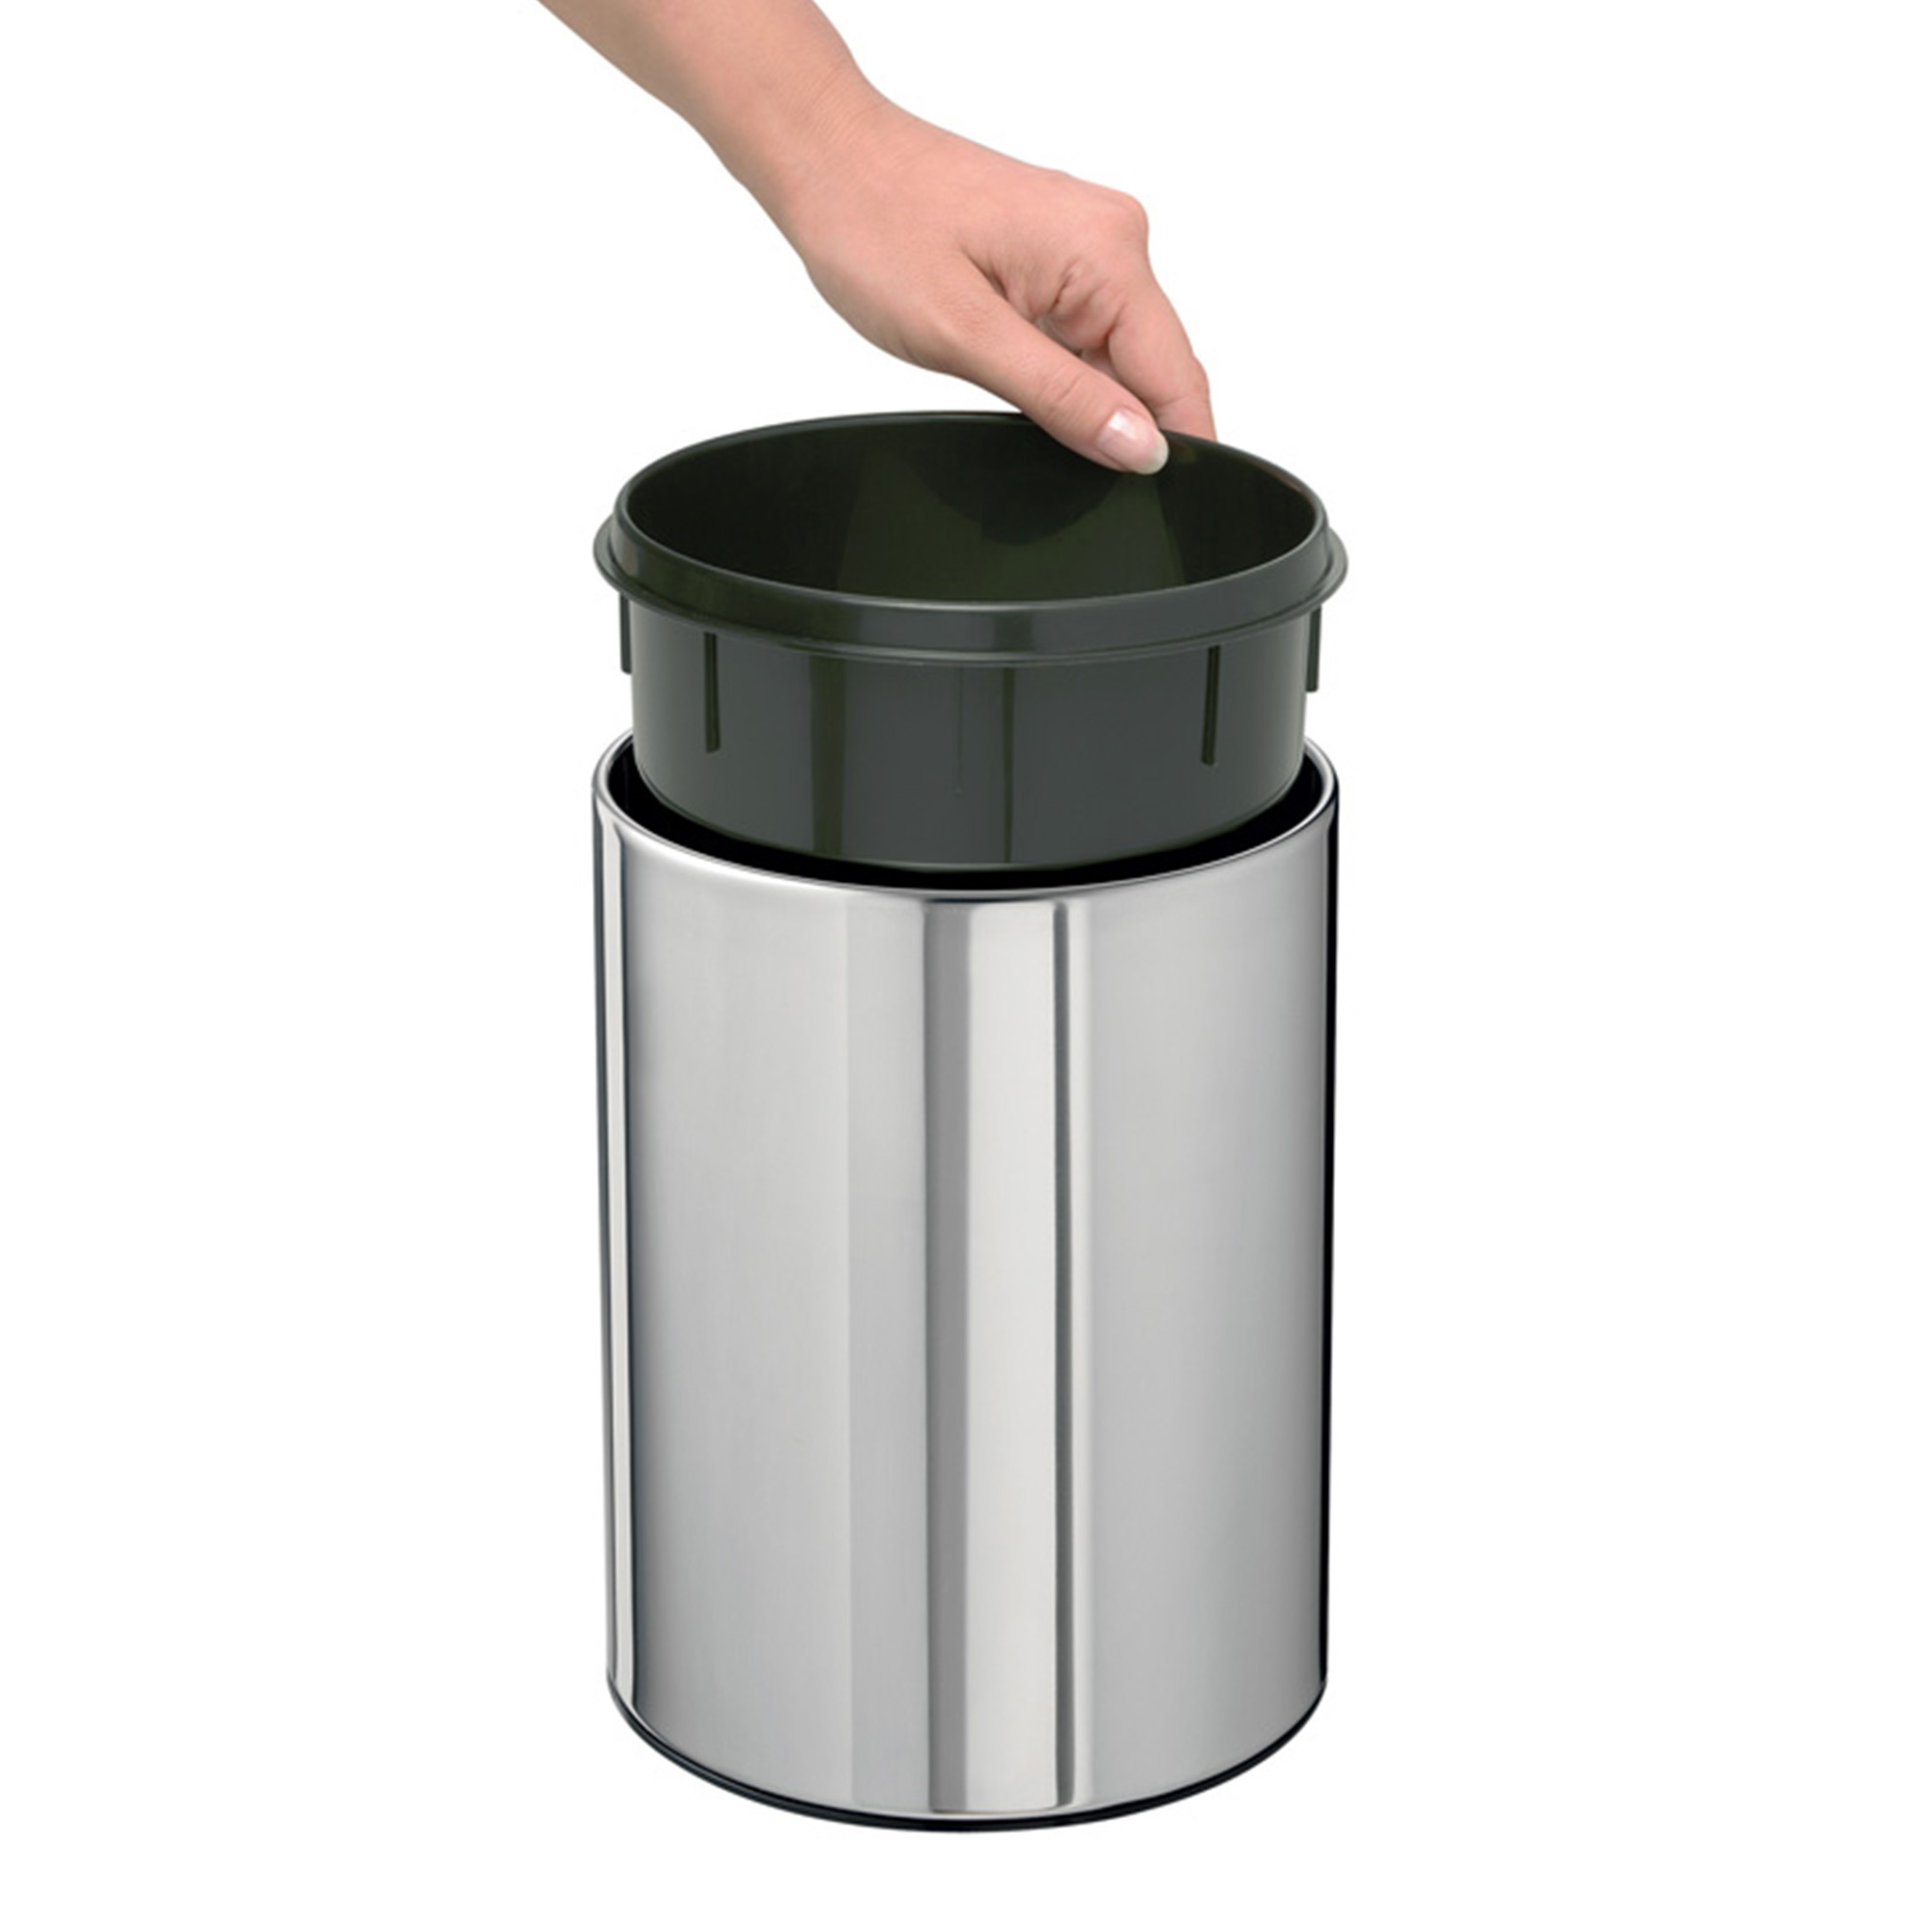 Mülleimer mit Deckel | Metall | 7 Liter | verzinkt und pulverbeschichtet |  Ø21,5cm | mattschwarz